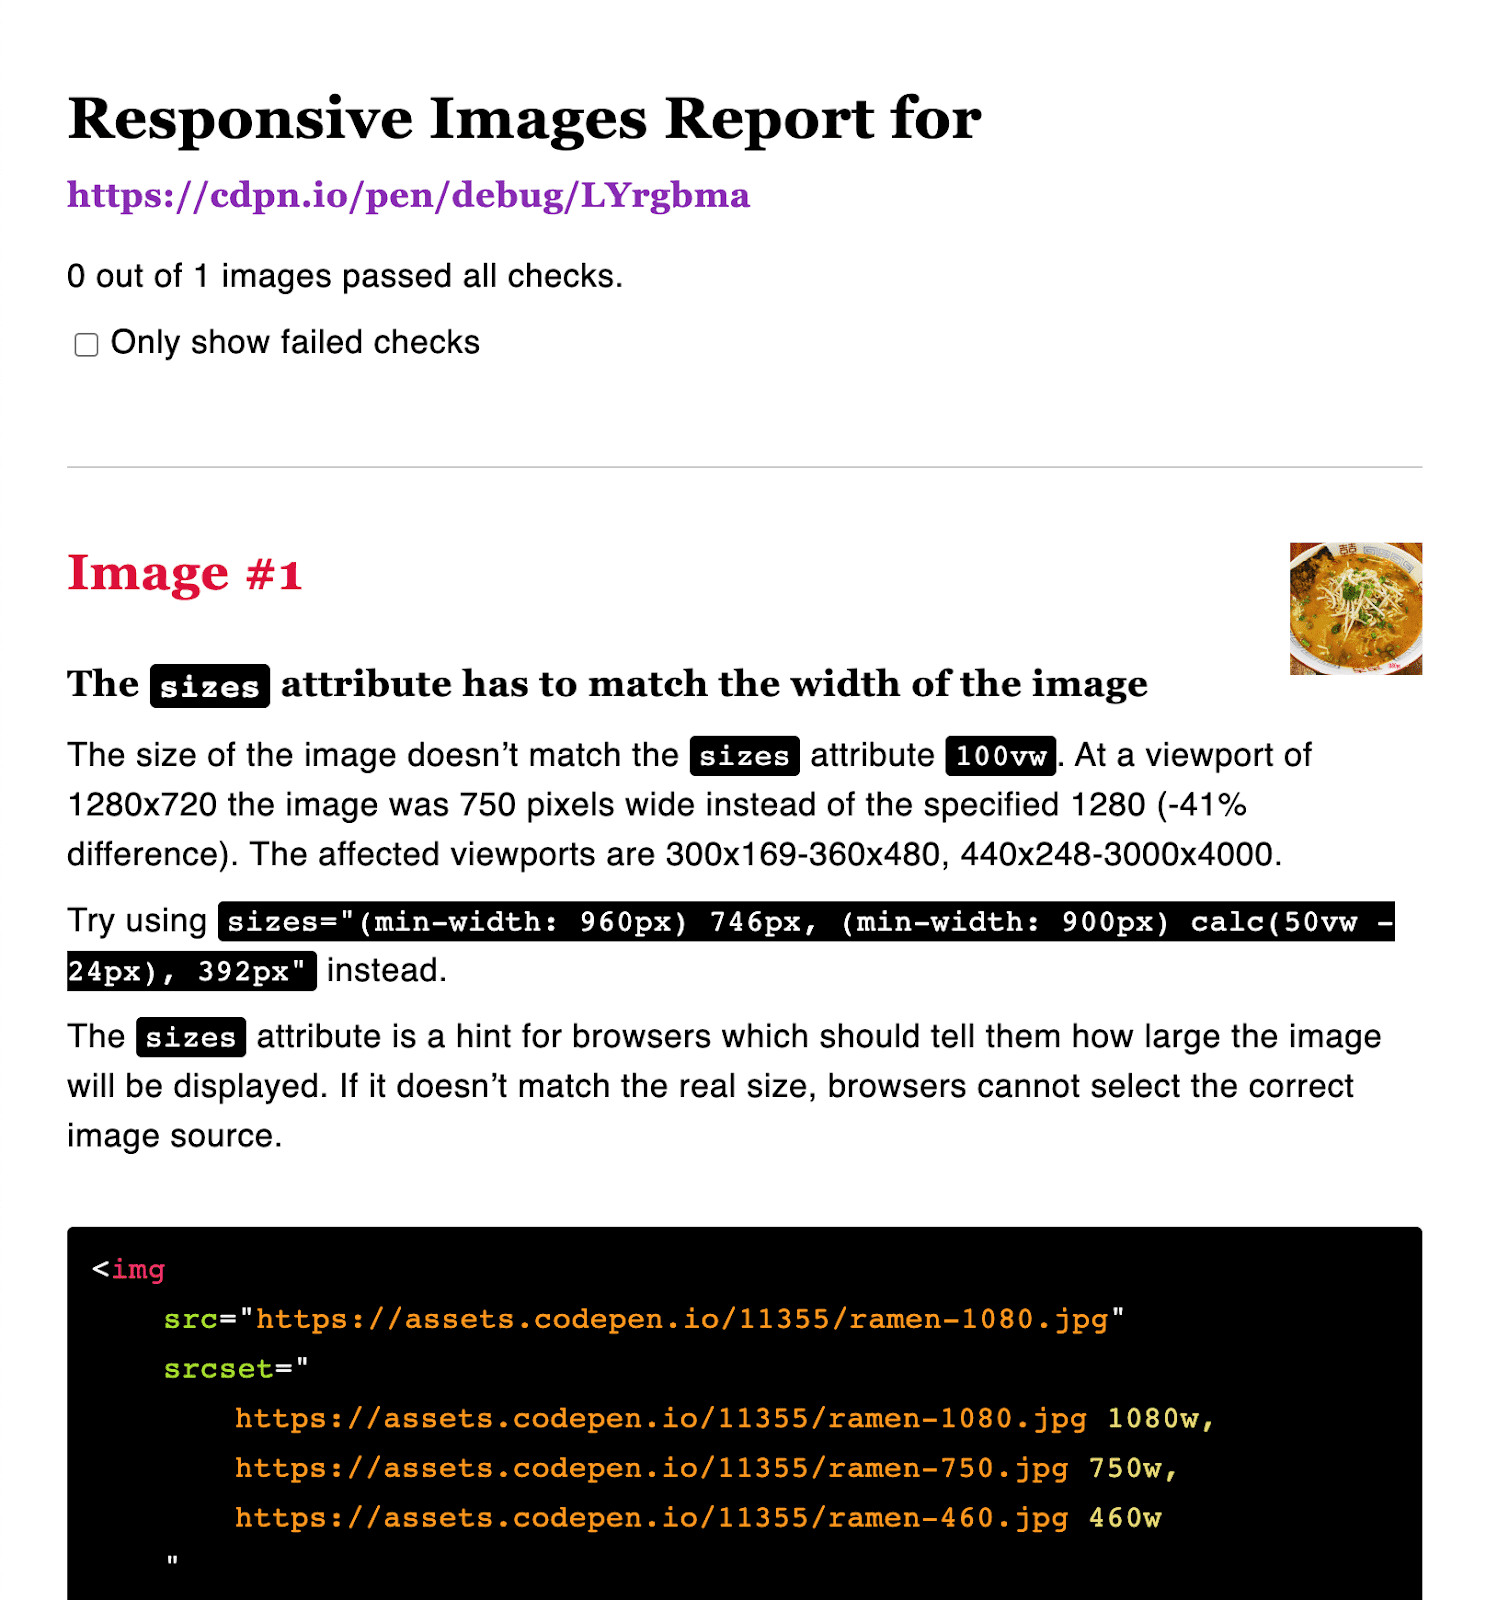 Relatório de imagem responsiva com dimensões sugeridas.